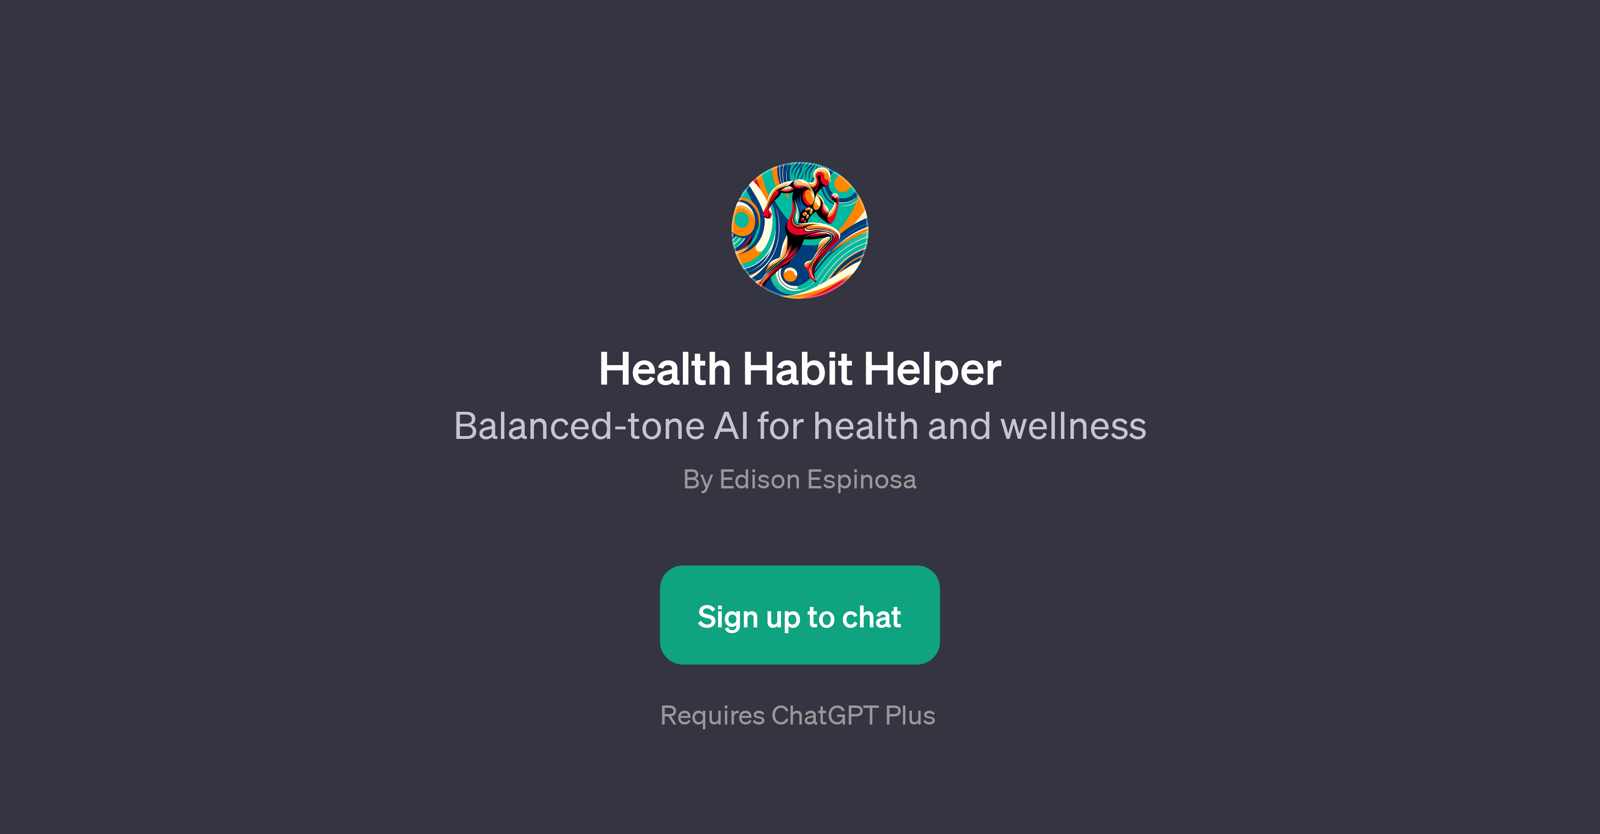 Health Habit Helper website